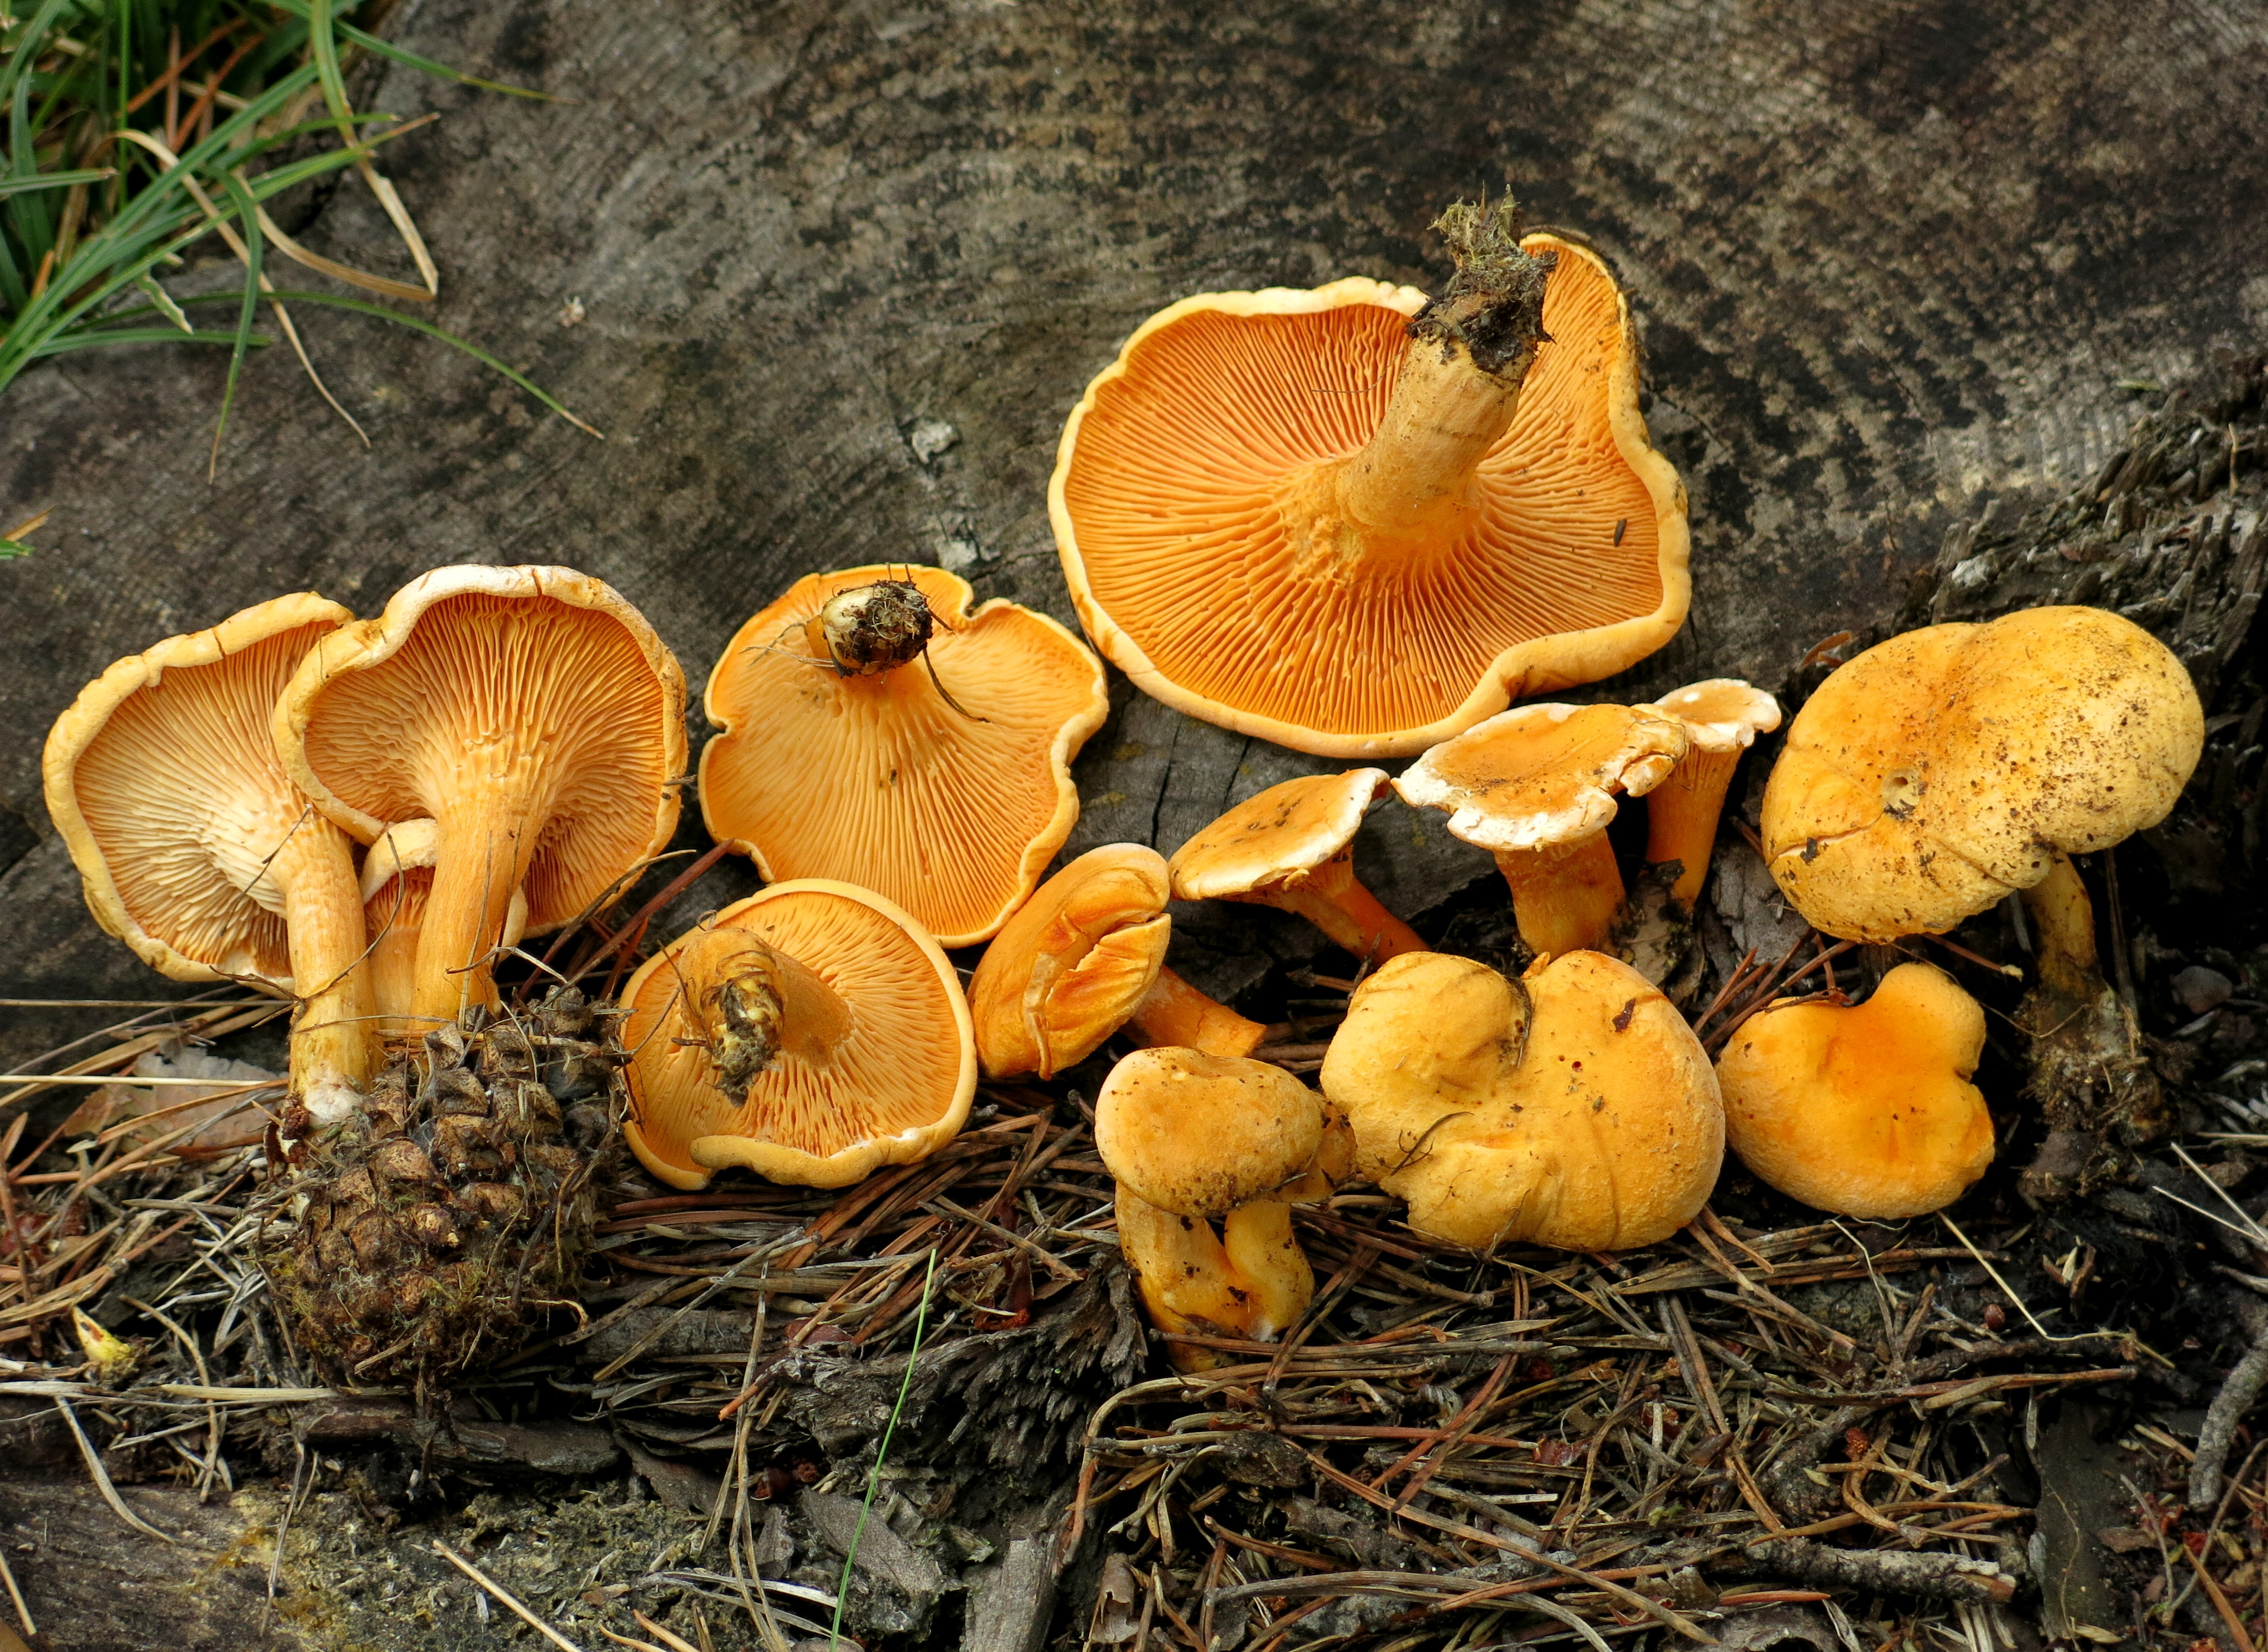 Ложная лисичка – неопасный двойник настоящей - грибы собираем